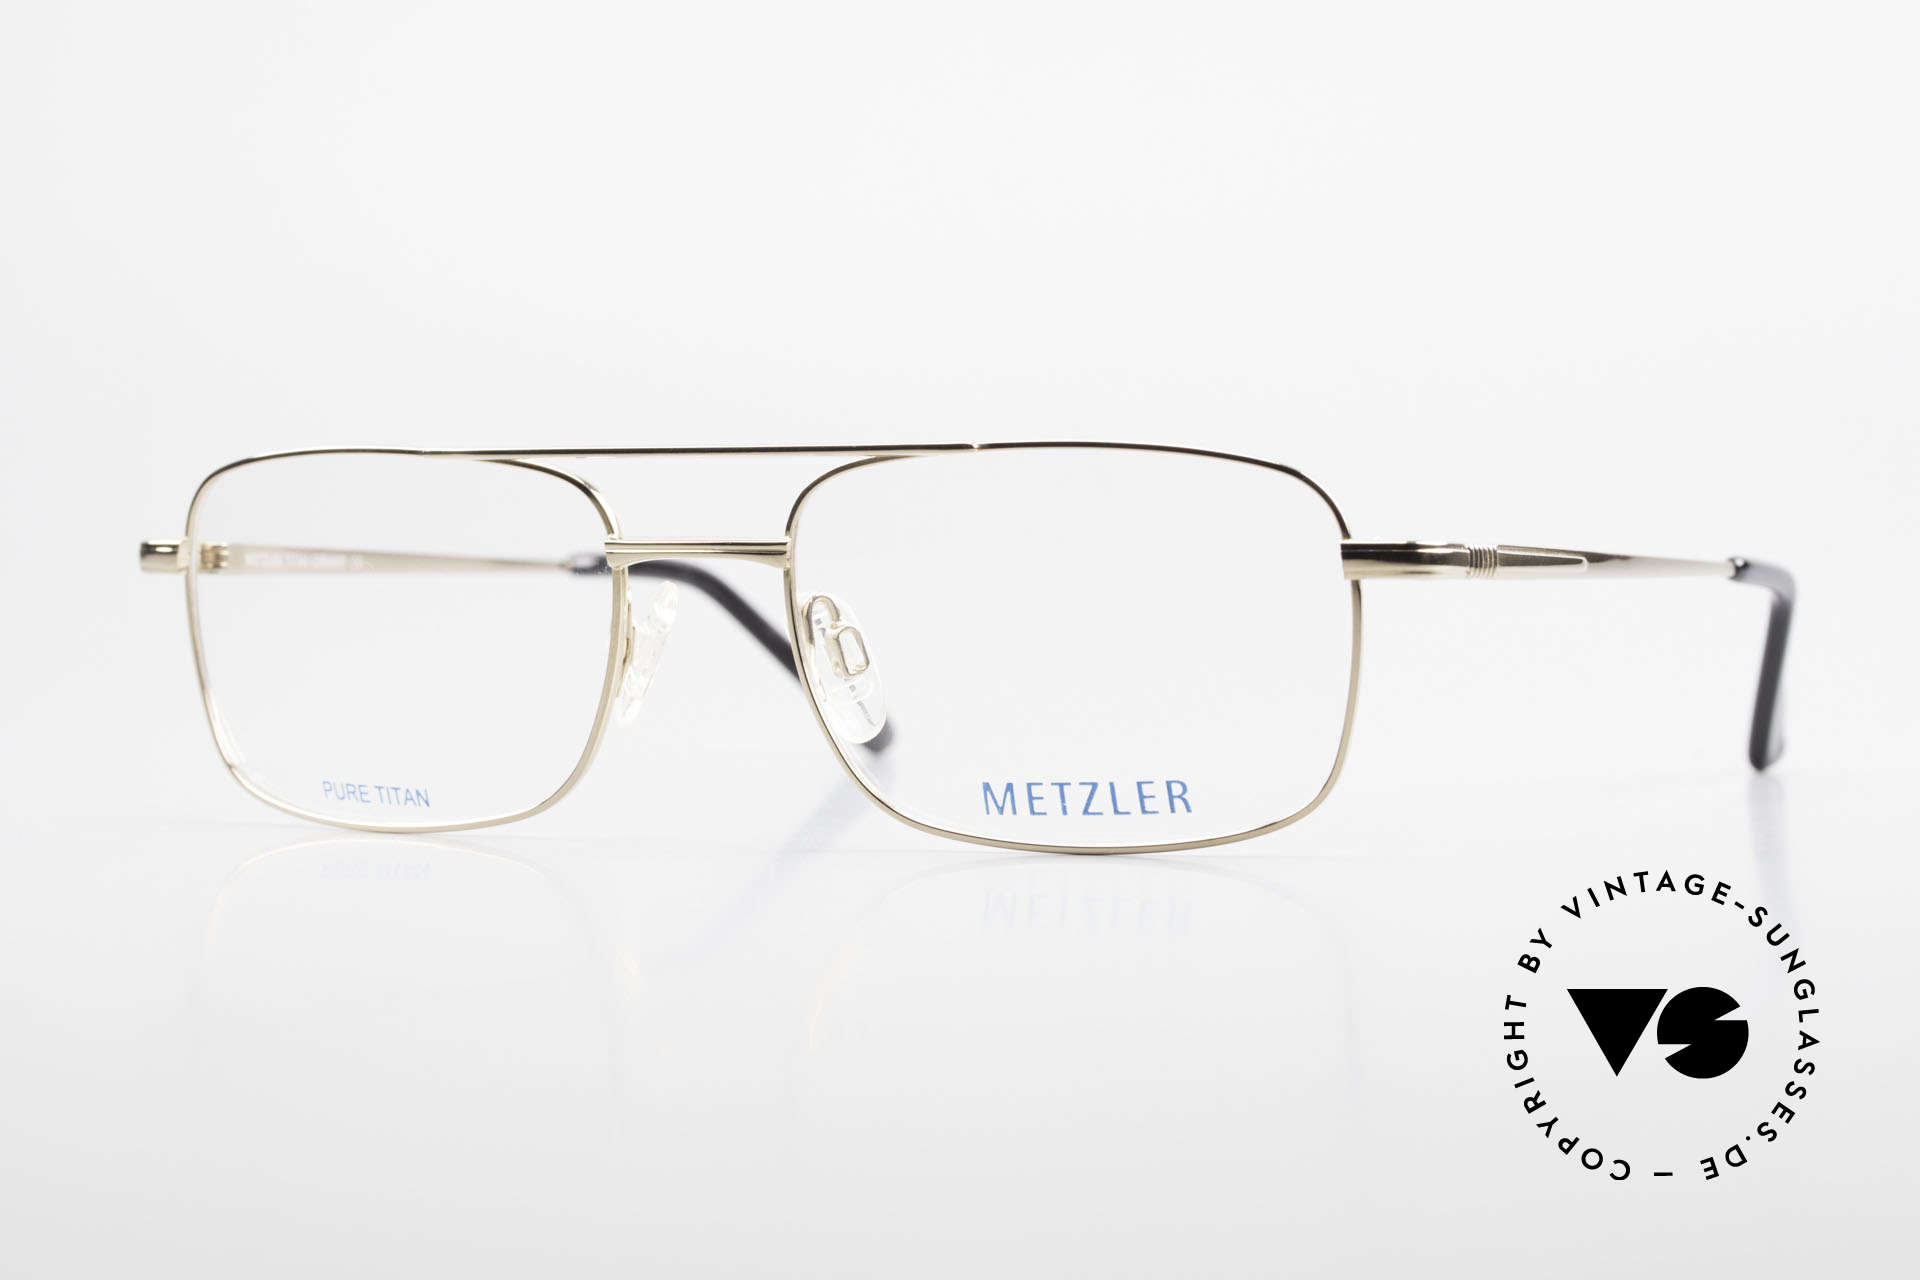 Metzler 1680 90's Titan Frame Gold Plated, METZLER eyeglasses 1680, col 689, size 56/19, 140, Made for Men